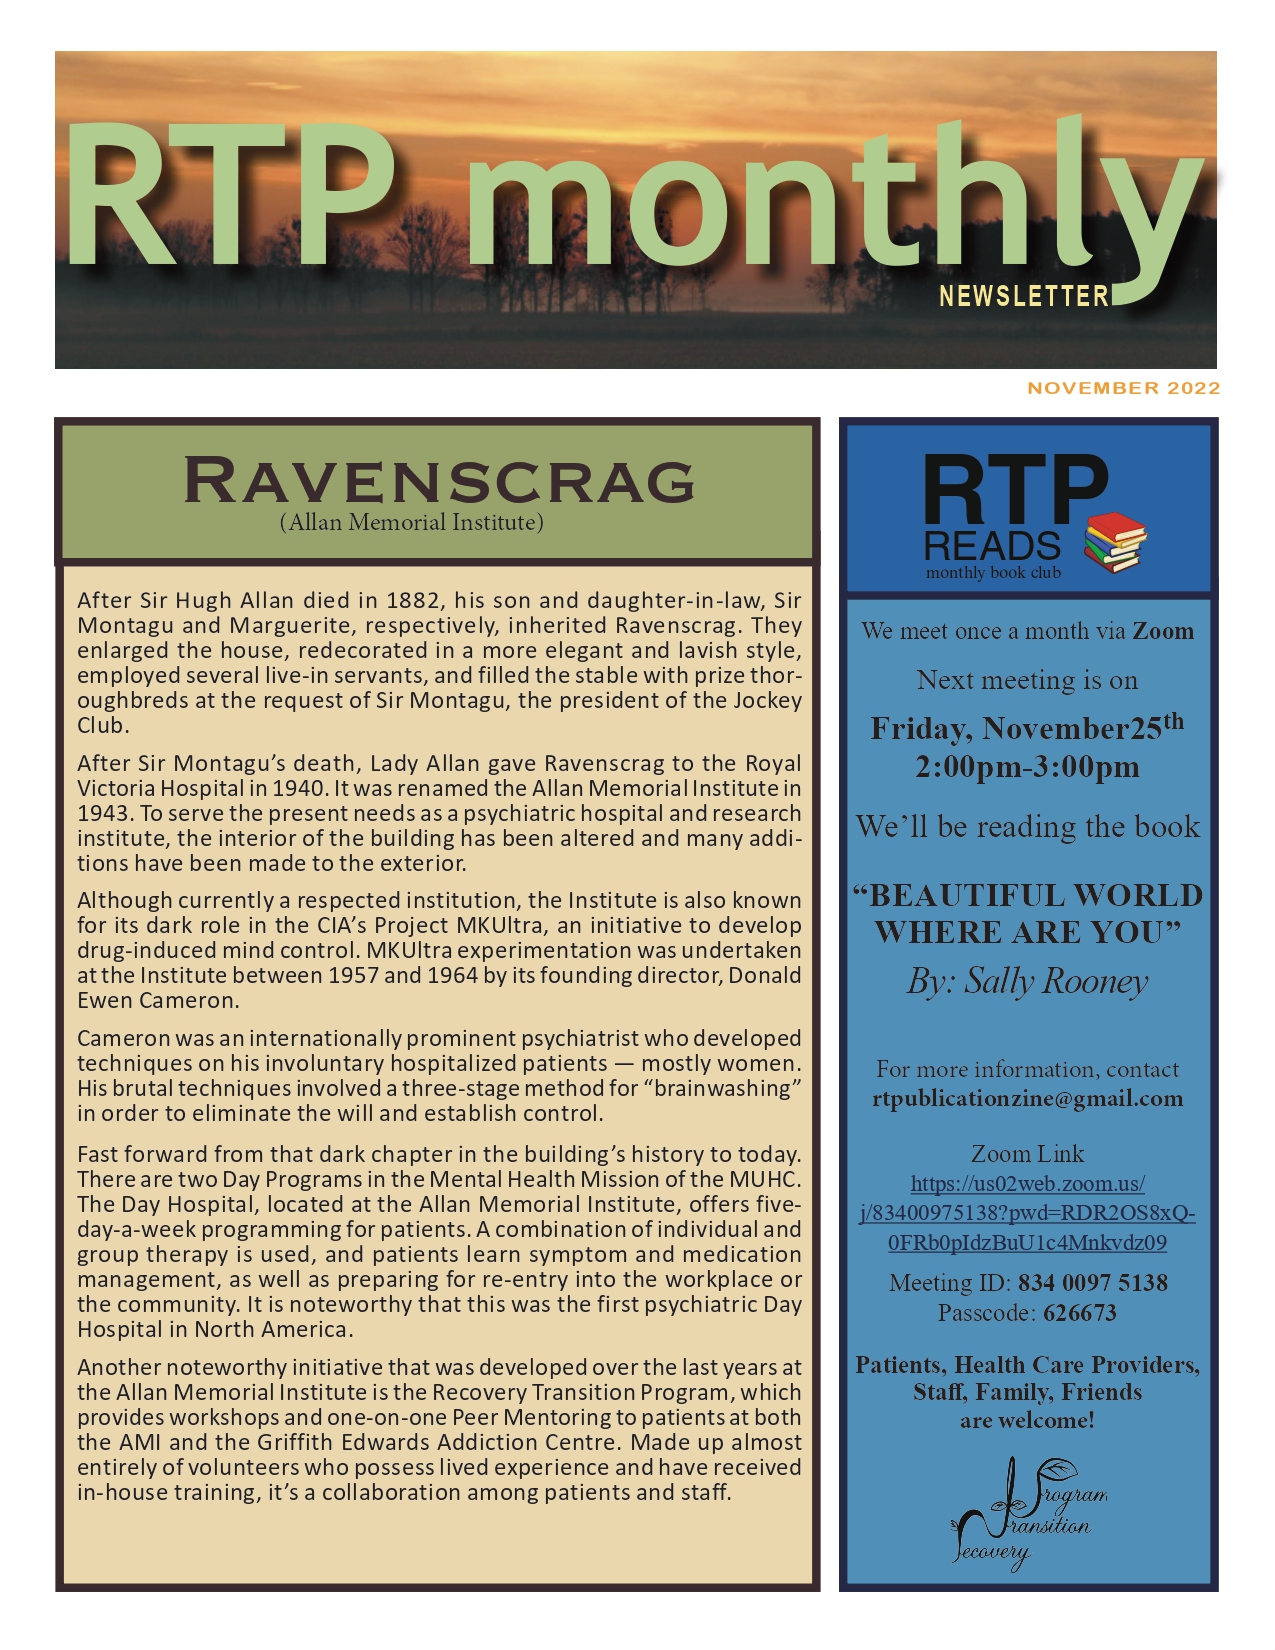 RTP Monthly Newsletter November 2022